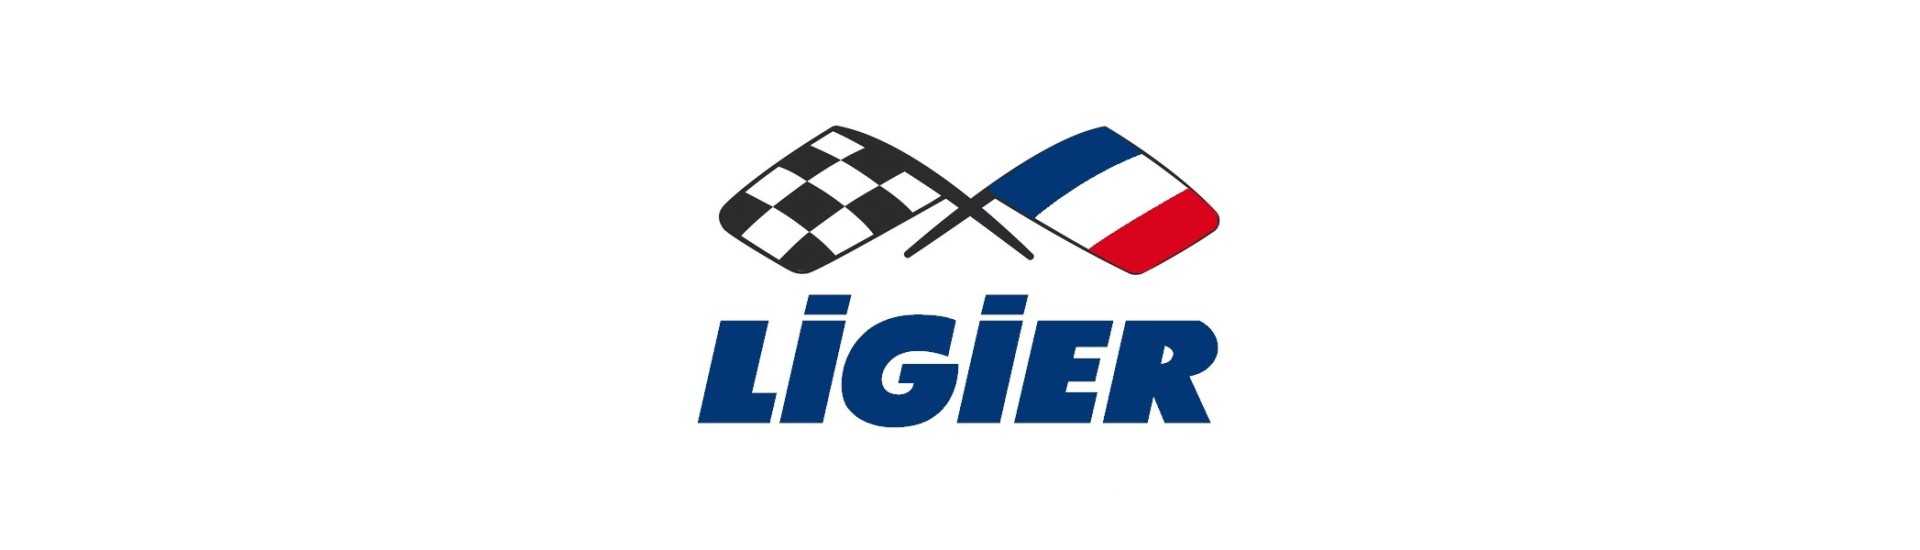 Vetro Hayon al miglior prezzo per auto senza permesso Ligier